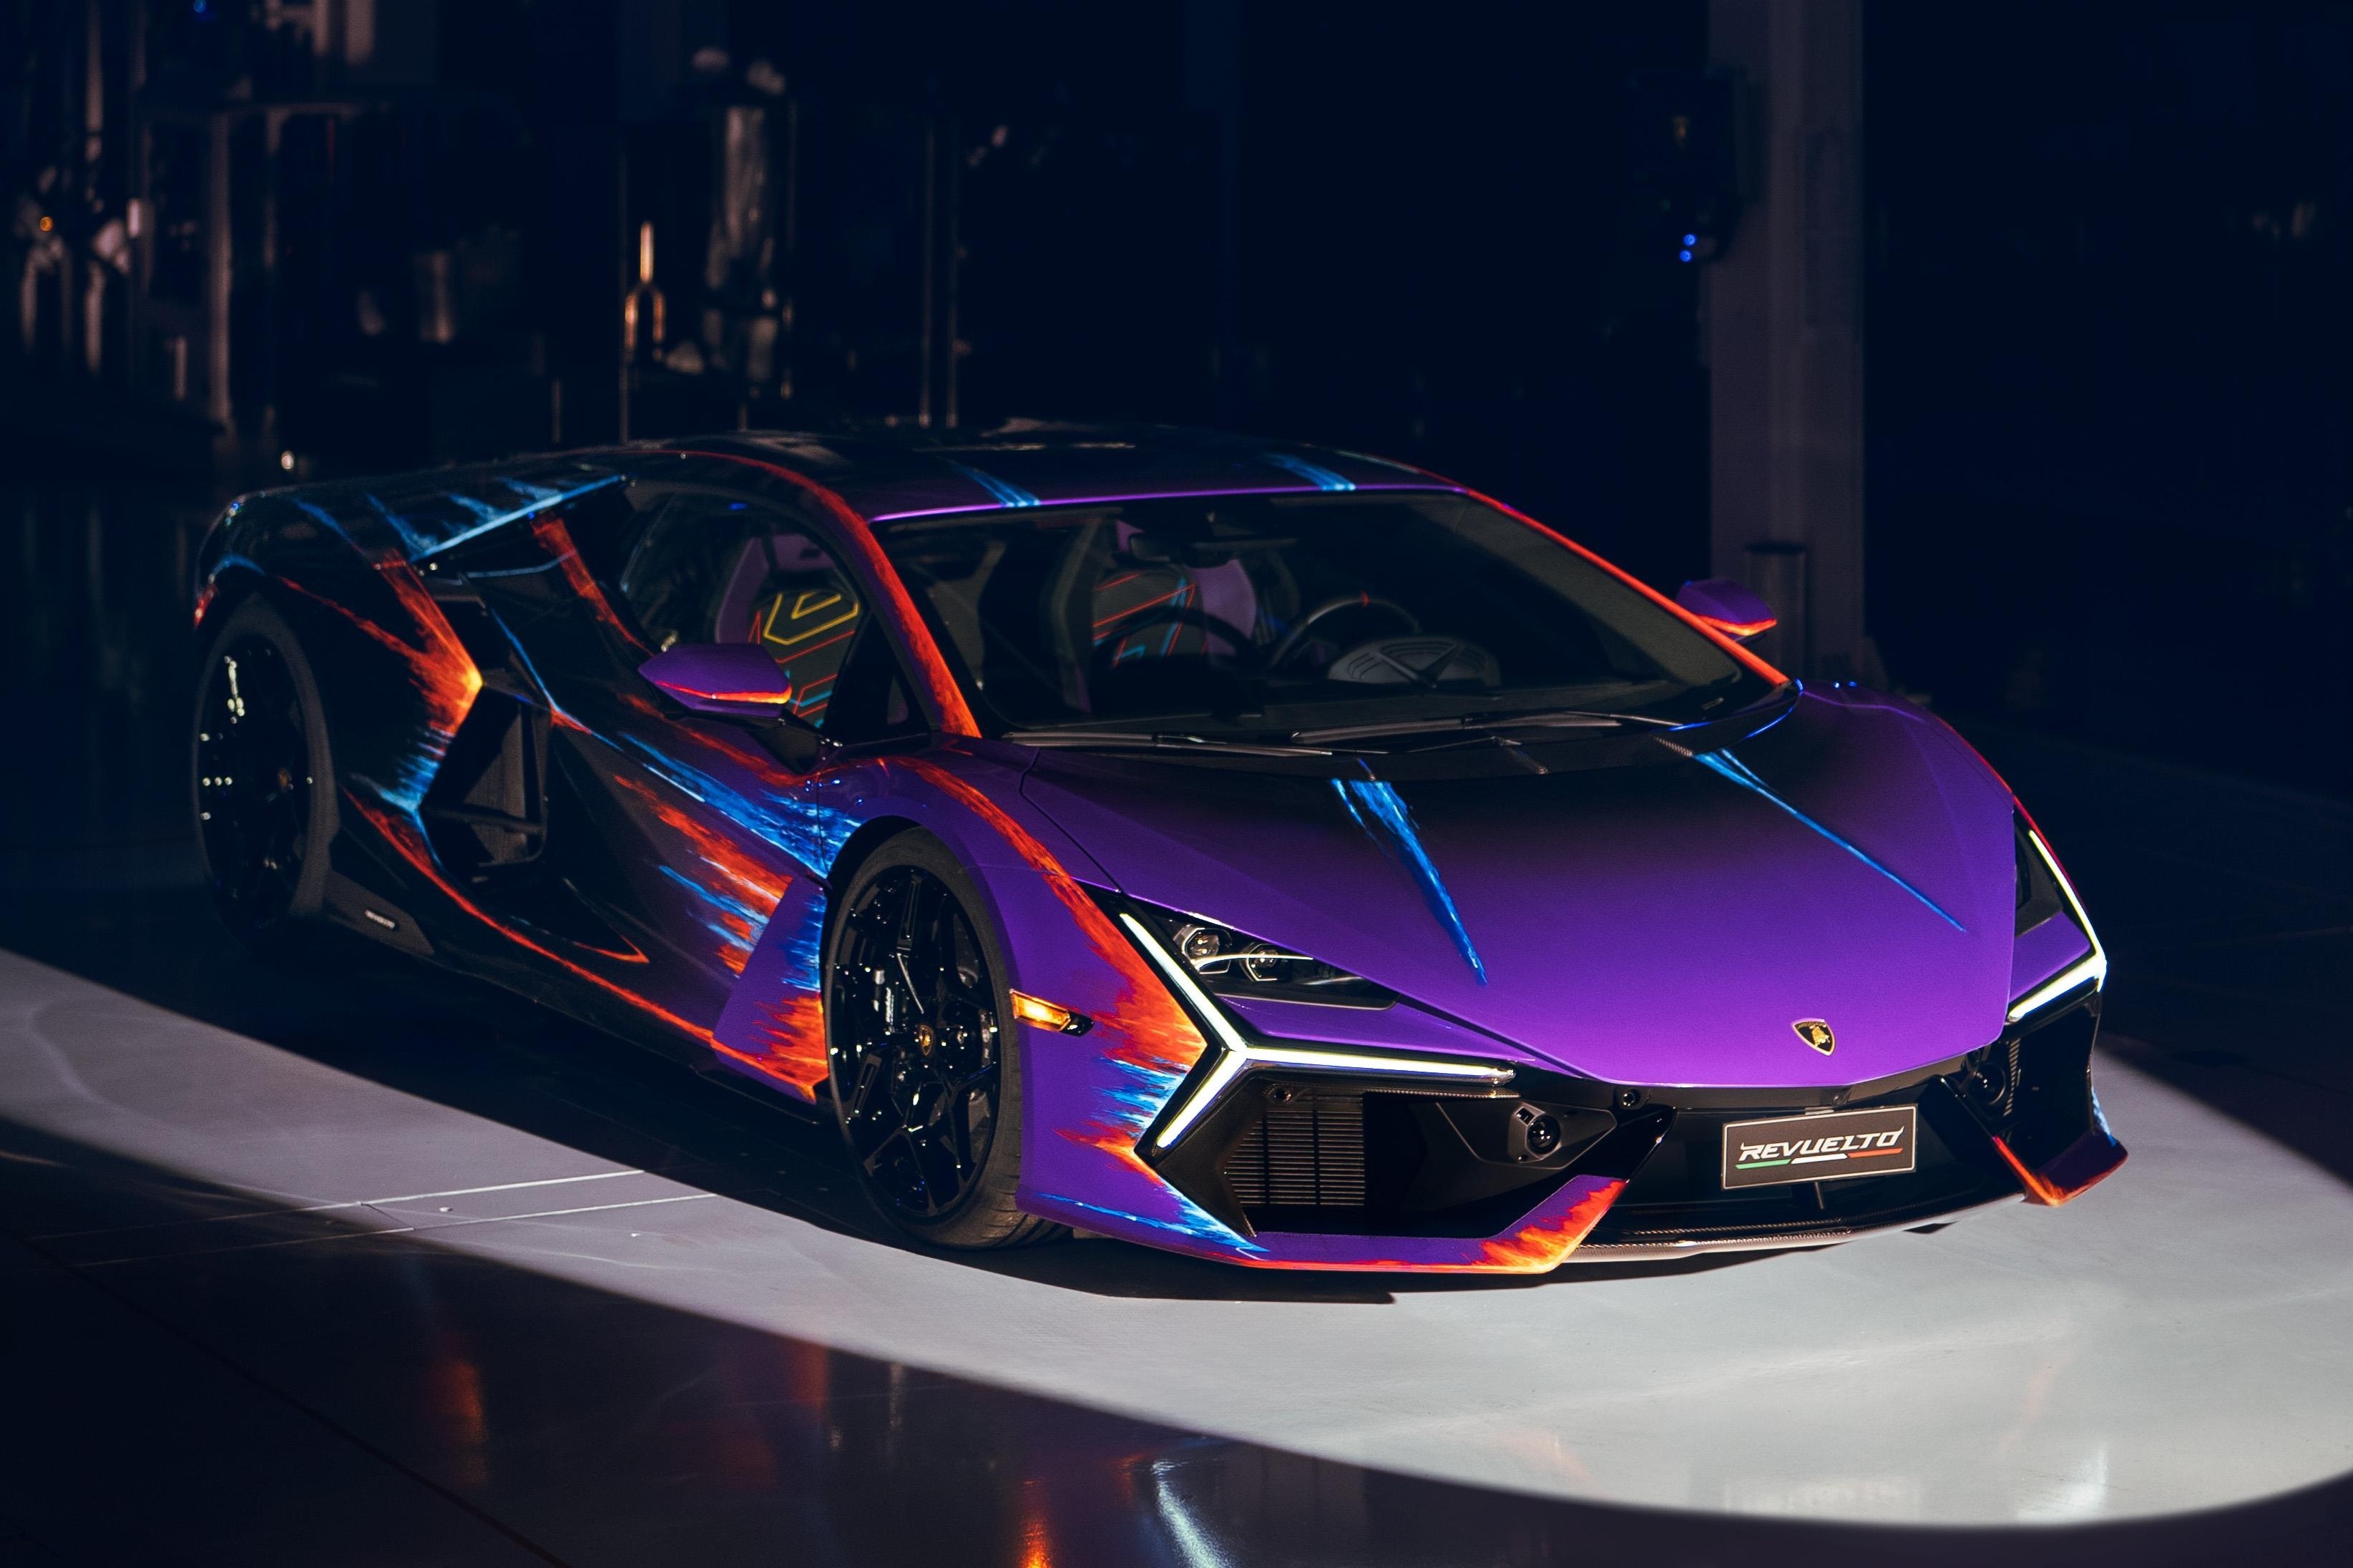 Hé lộ thiết kế của siêu xe kế nhiệm Lamborghini Aventador - Ôtô